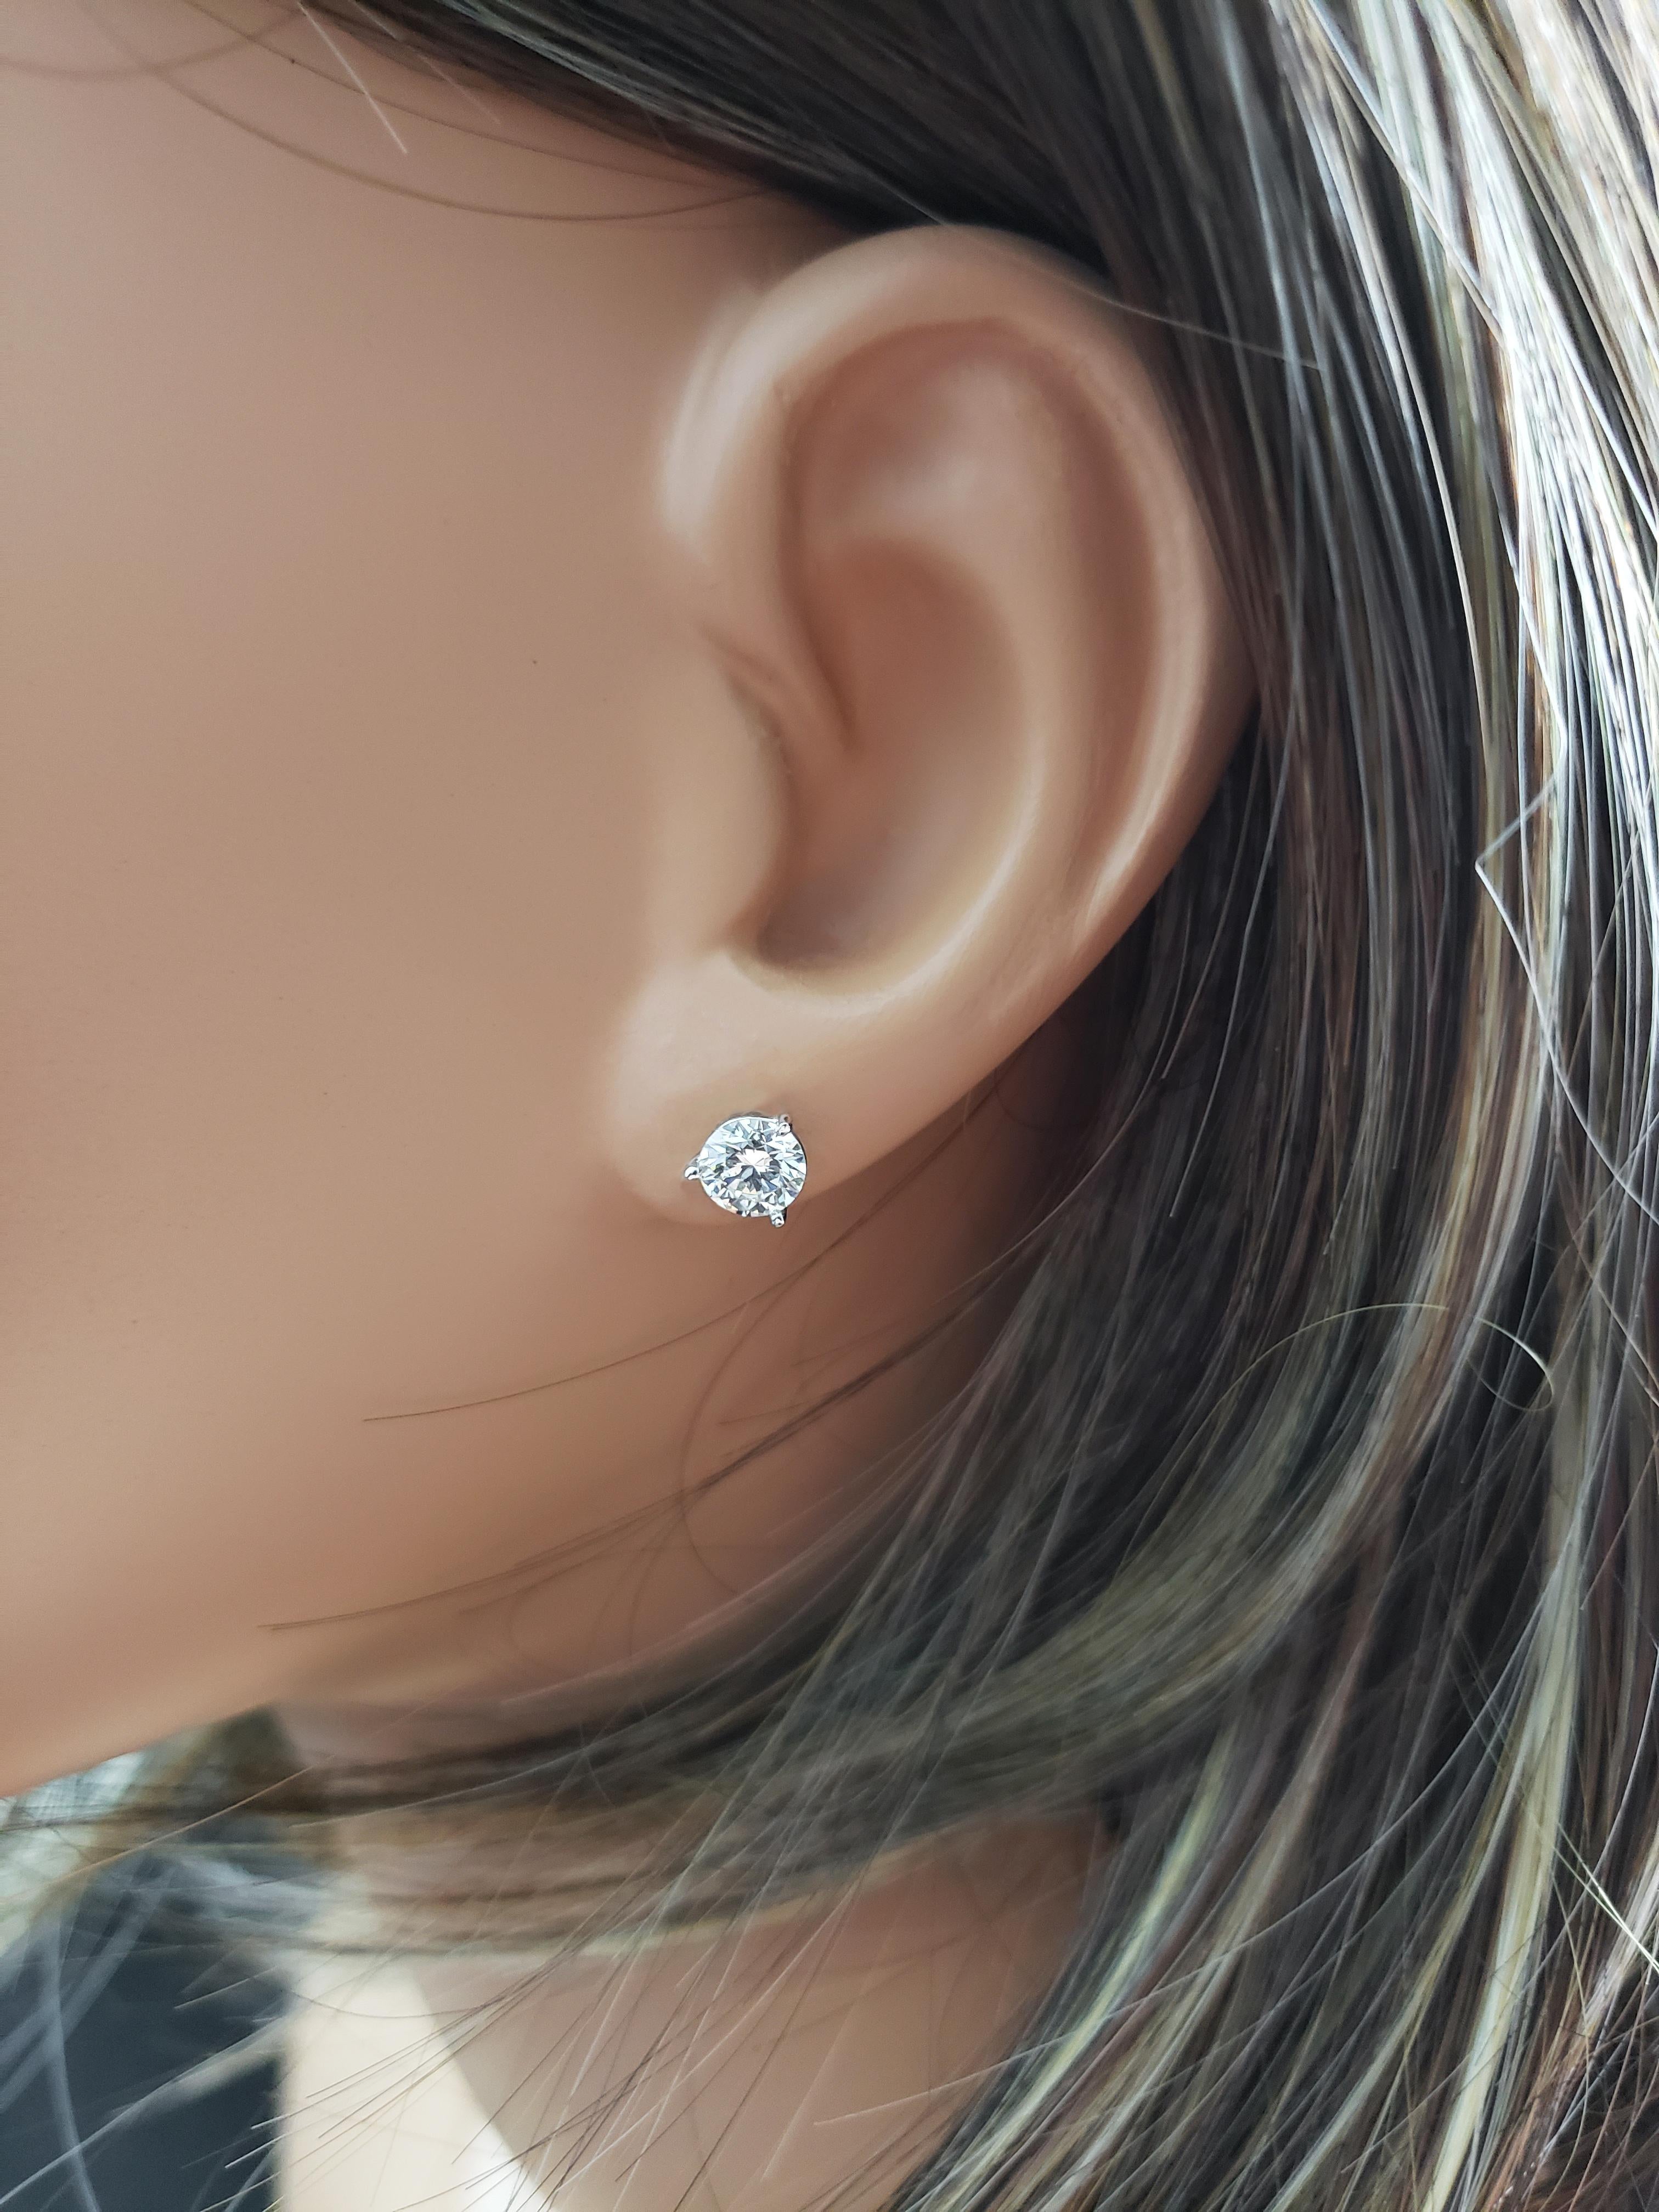 3 Carat Diamond Stud Earrings On Ear